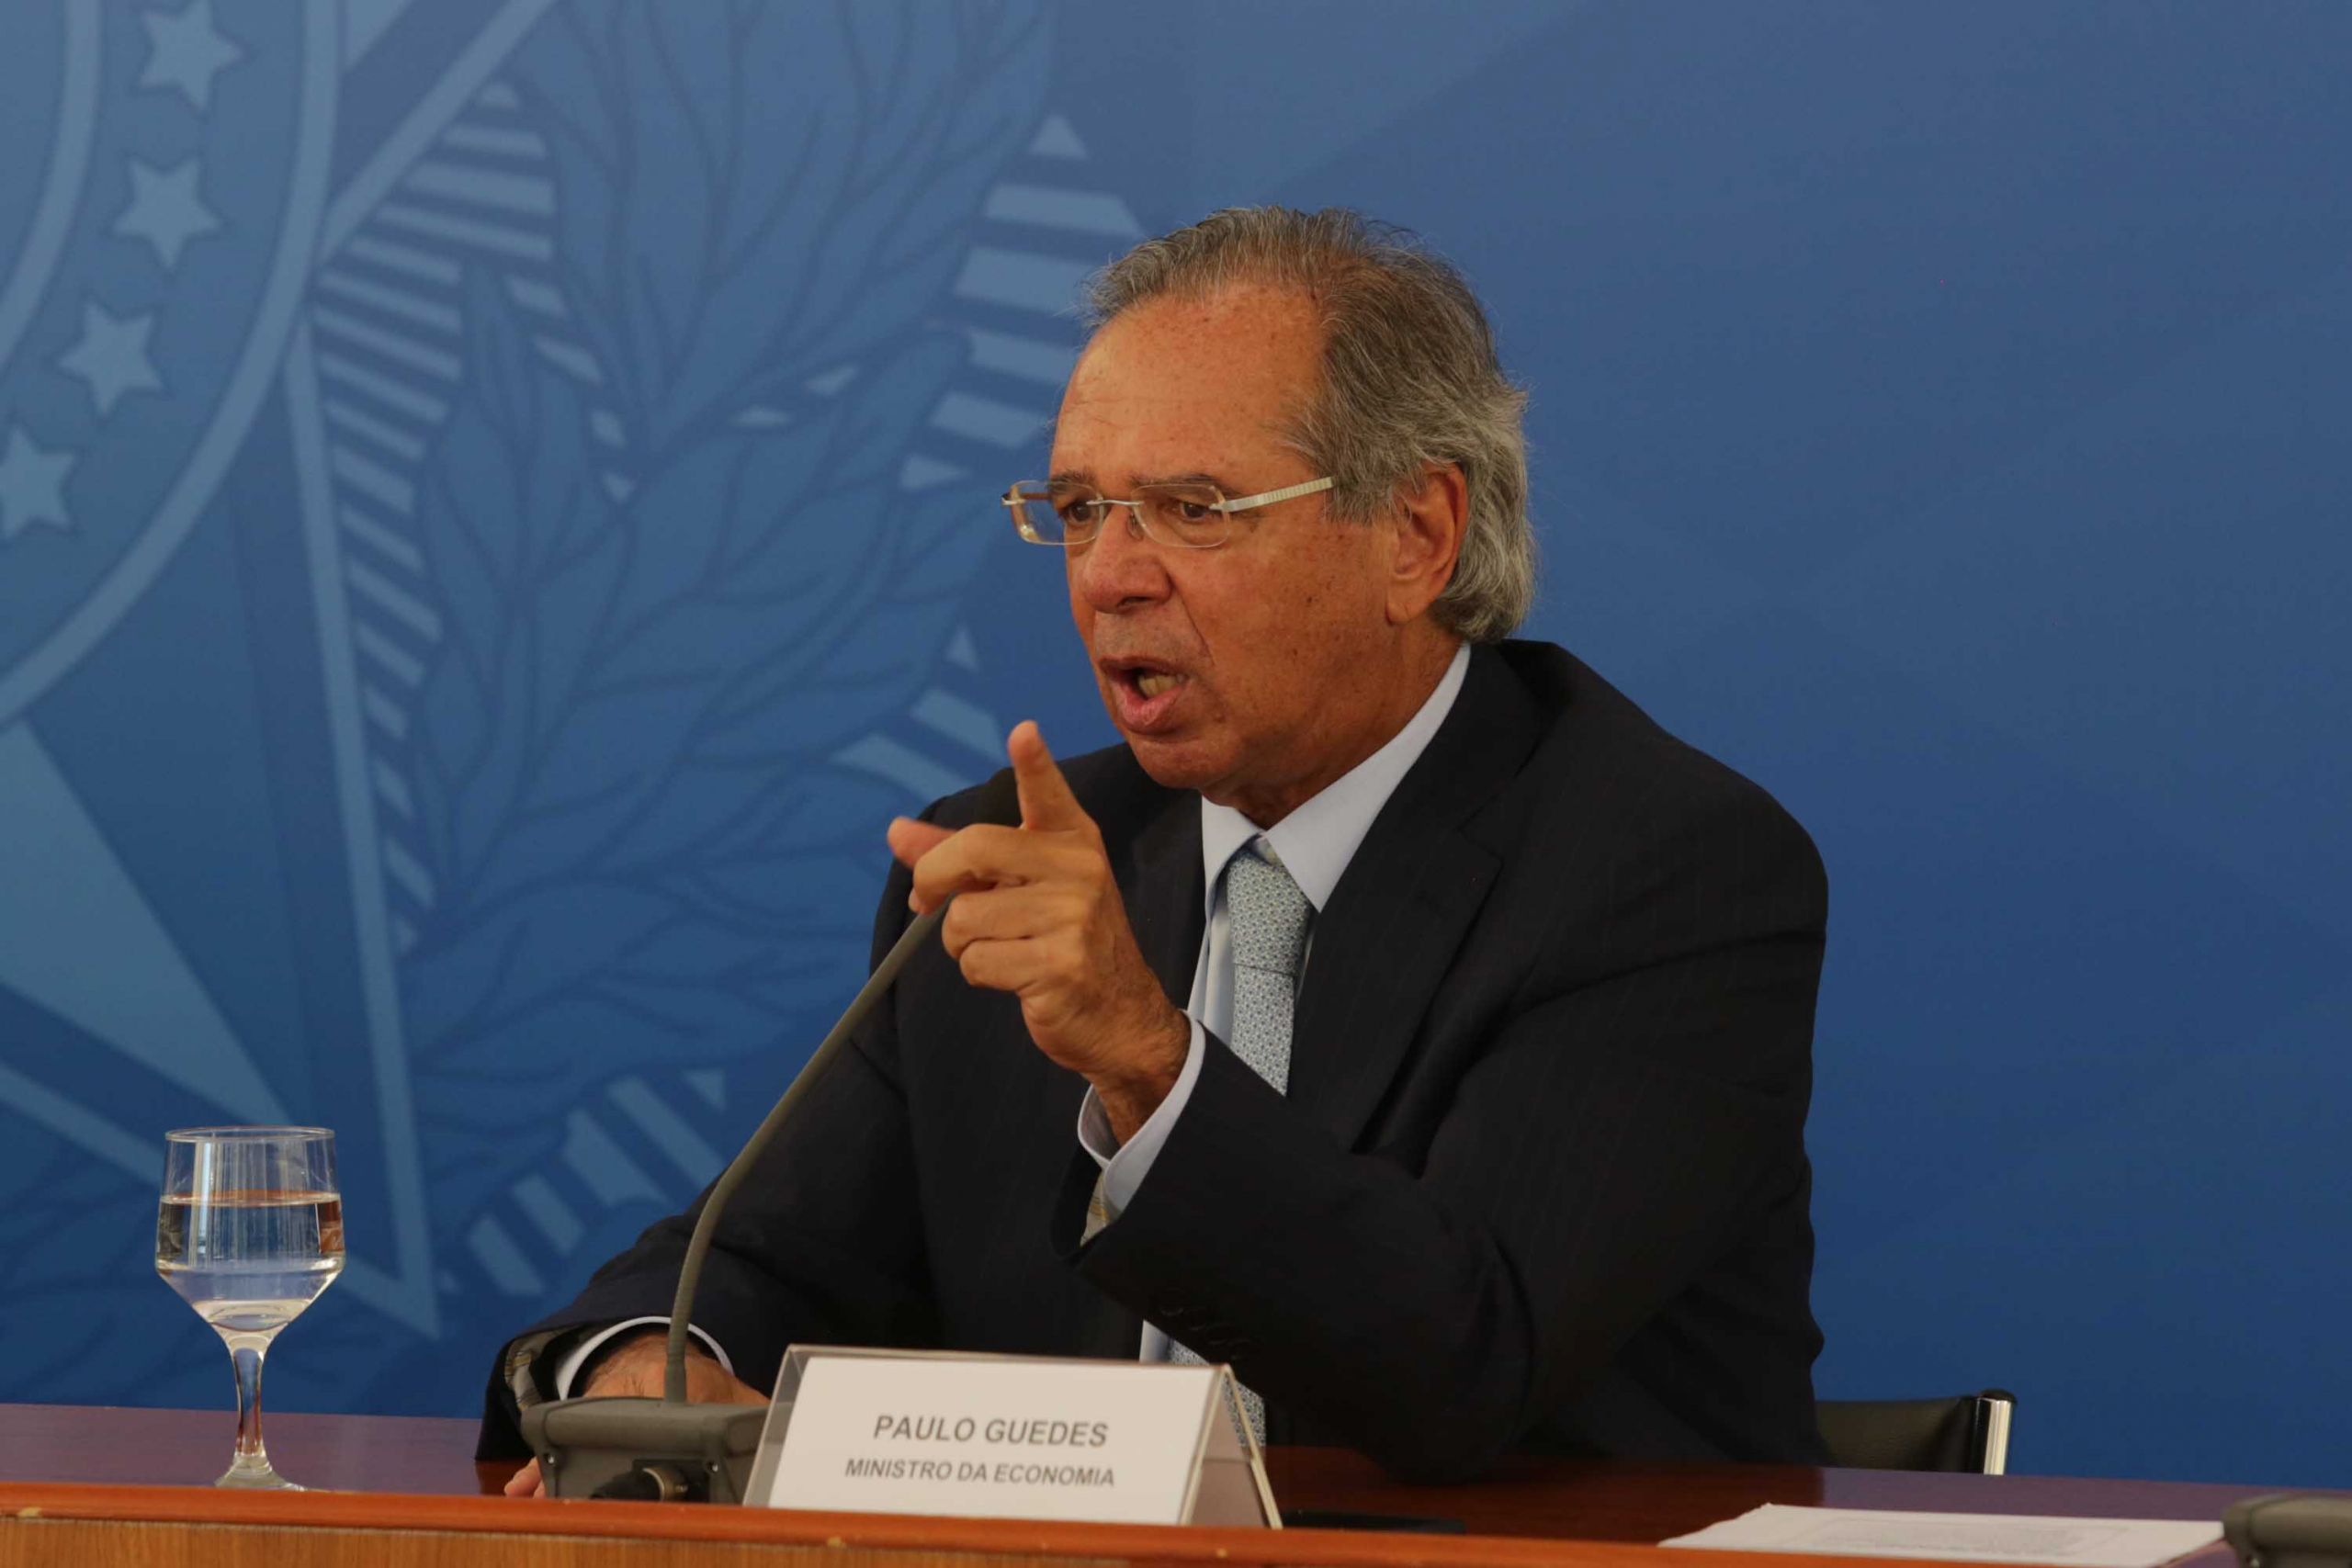 Paulo Guedes, ministro da Economia, fala com o dedo em riste, sentado à frente de um fundo azul